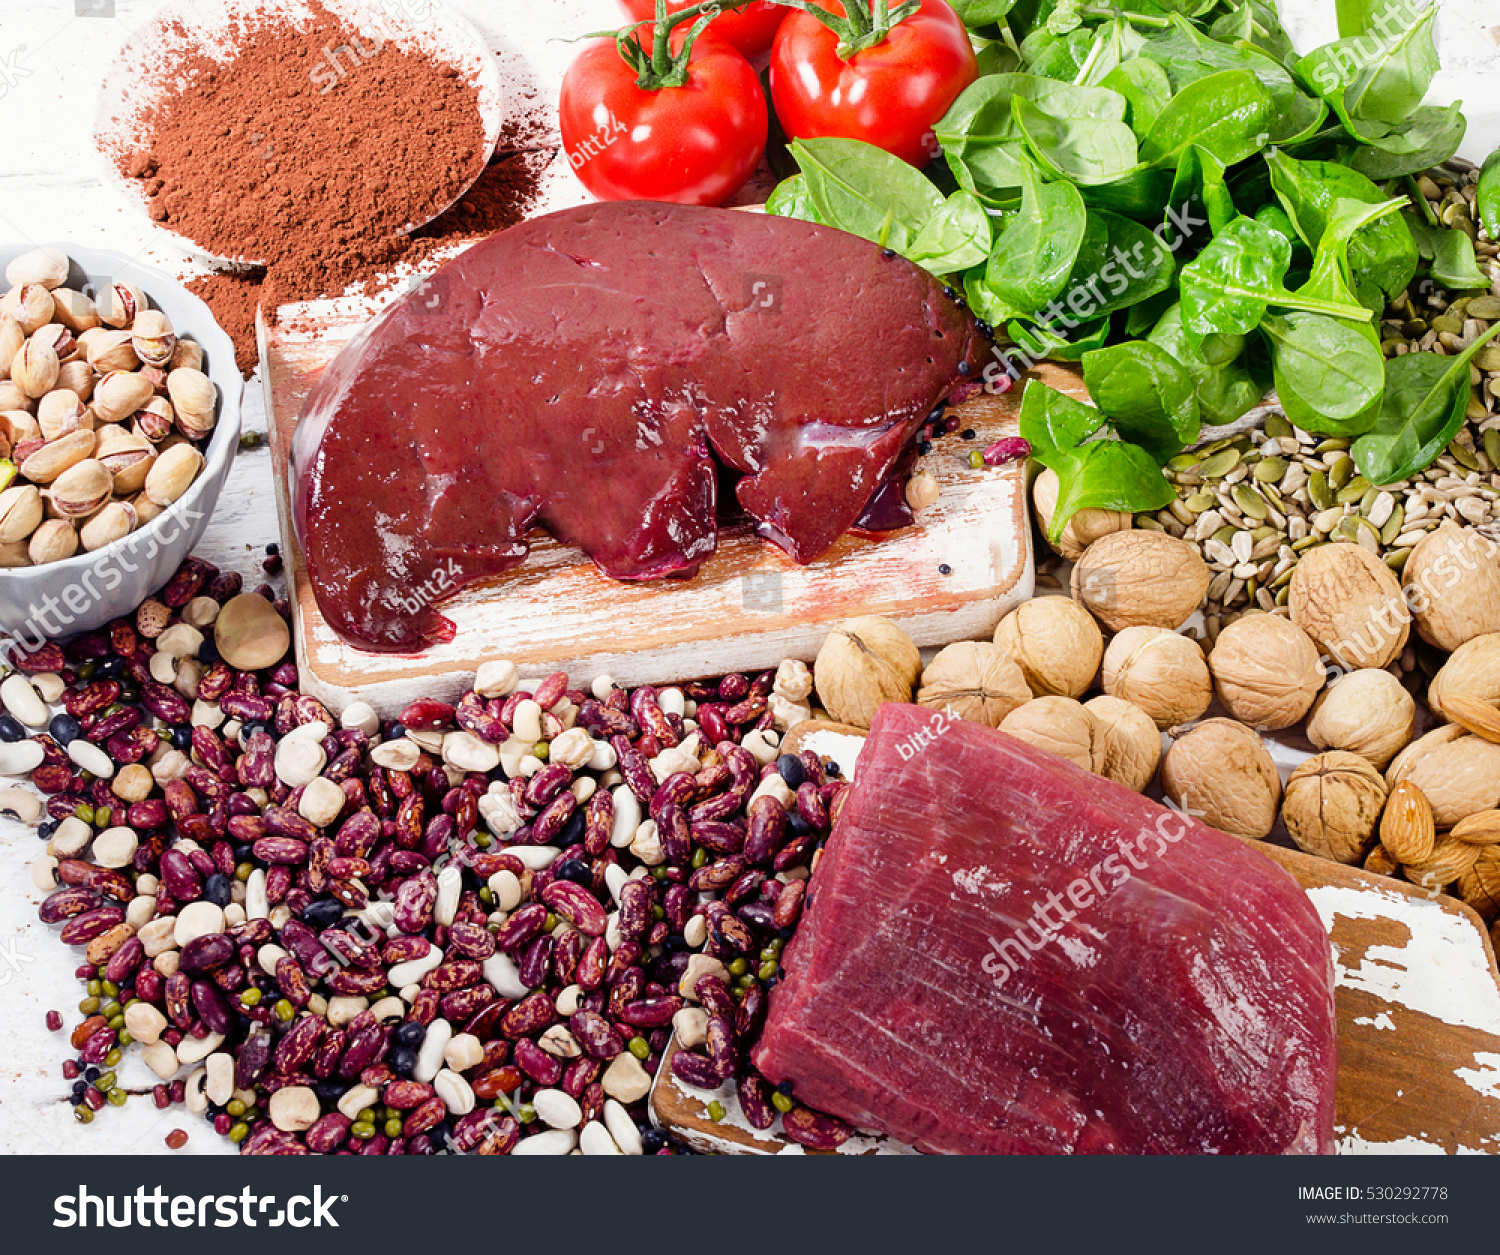 Печень для повышения гемоглобина. Железо в продуктах. Повышенное железо в пище. Еда для повышения железа. Блюда при анемии.